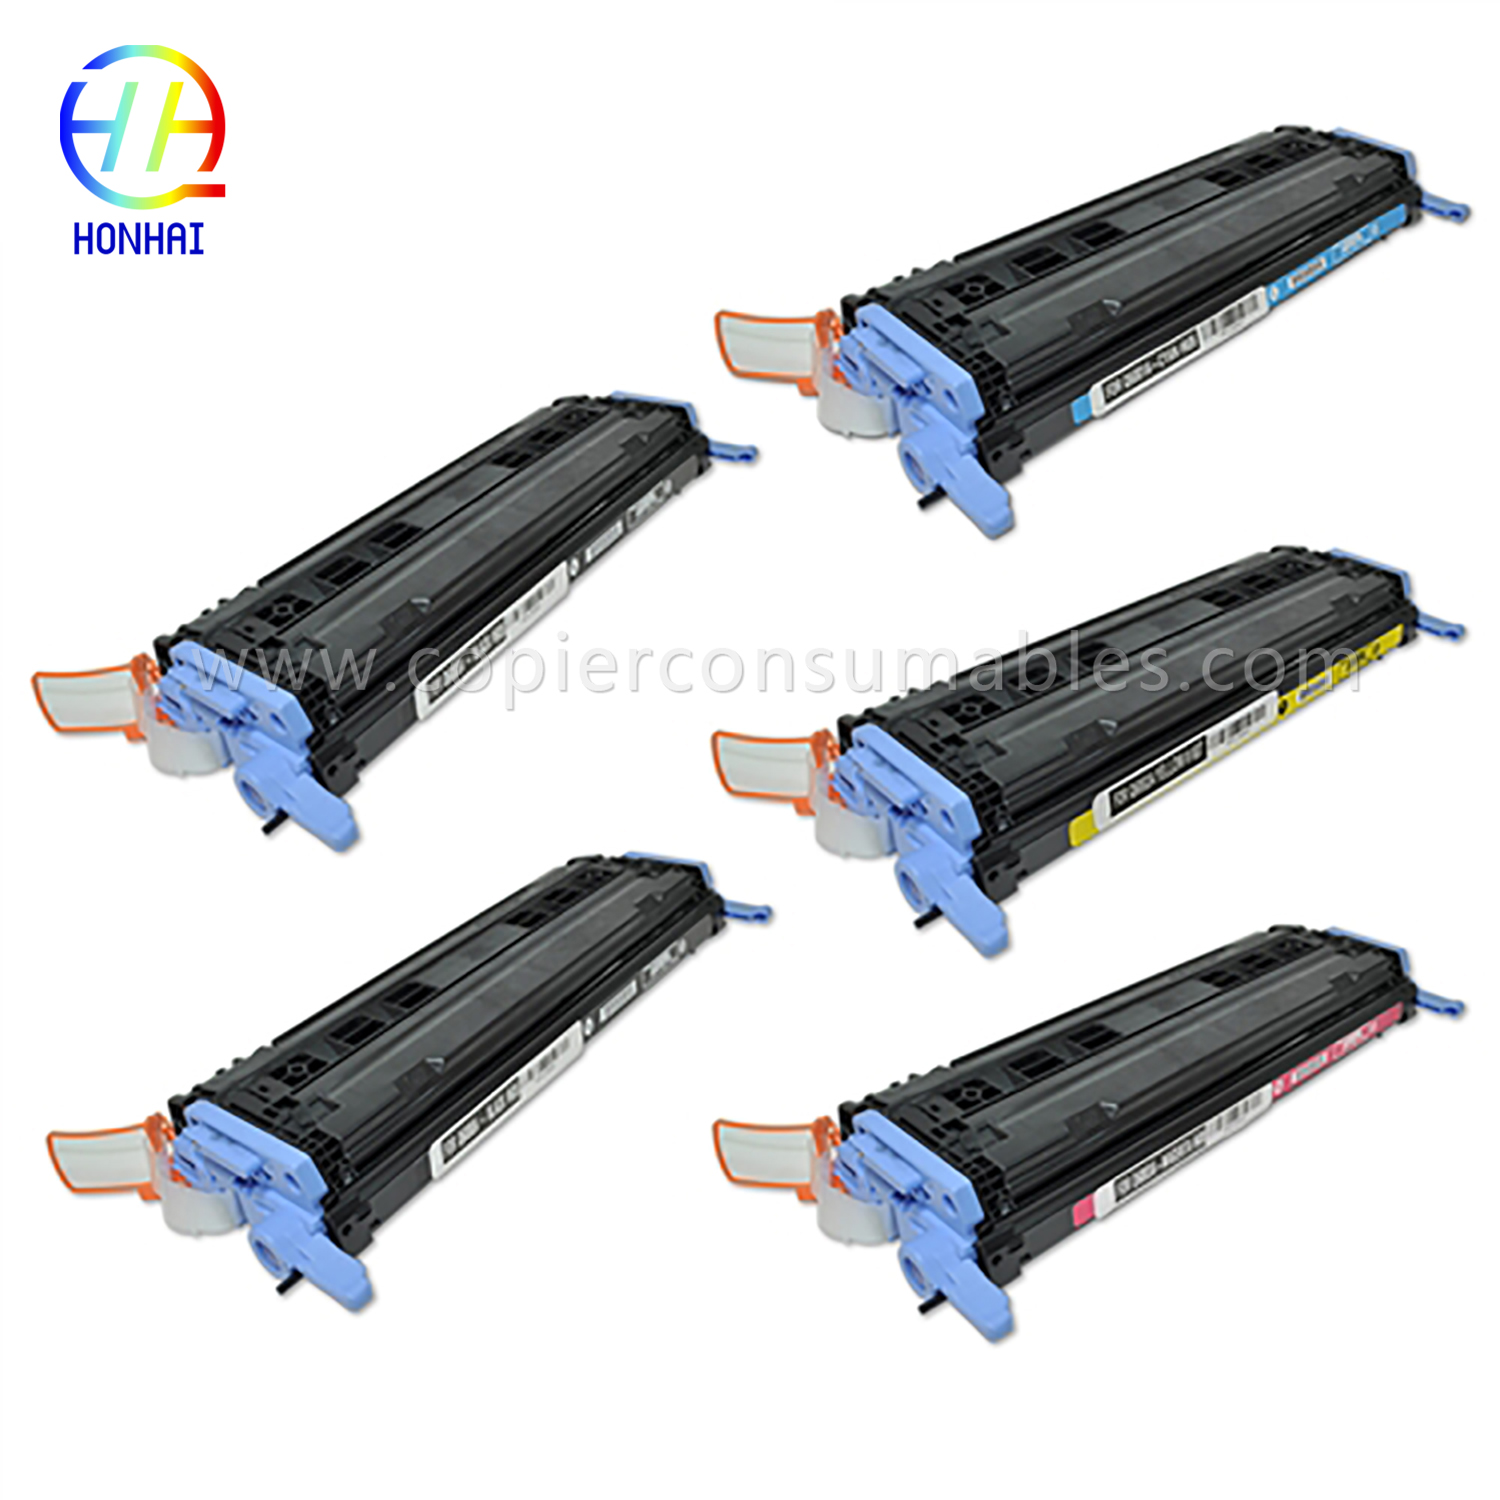 Lei Cartridge for HP Laserjet 1600 2600 2605 Cm1015mfp Cm1017mfp (Q6000A Q6001A Q6001A Q6003A) (2)